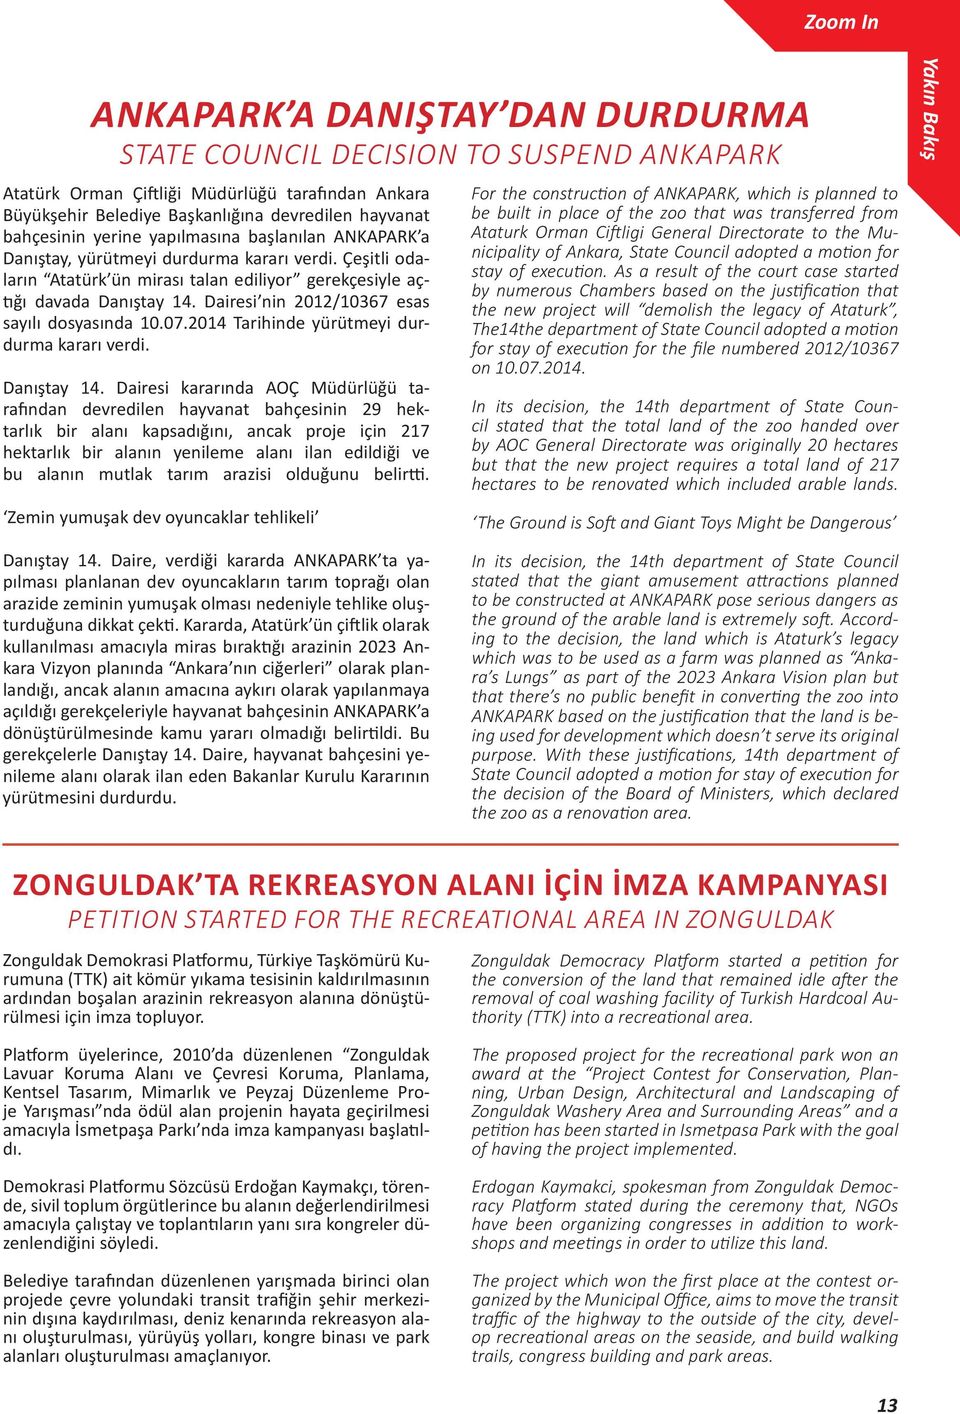 Dairesi nin 2012/10367 esas sayılı dosyasında 10.07.2014 Tarihinde yürütmeyi durdurma kararı verdi. Danıştay 14.